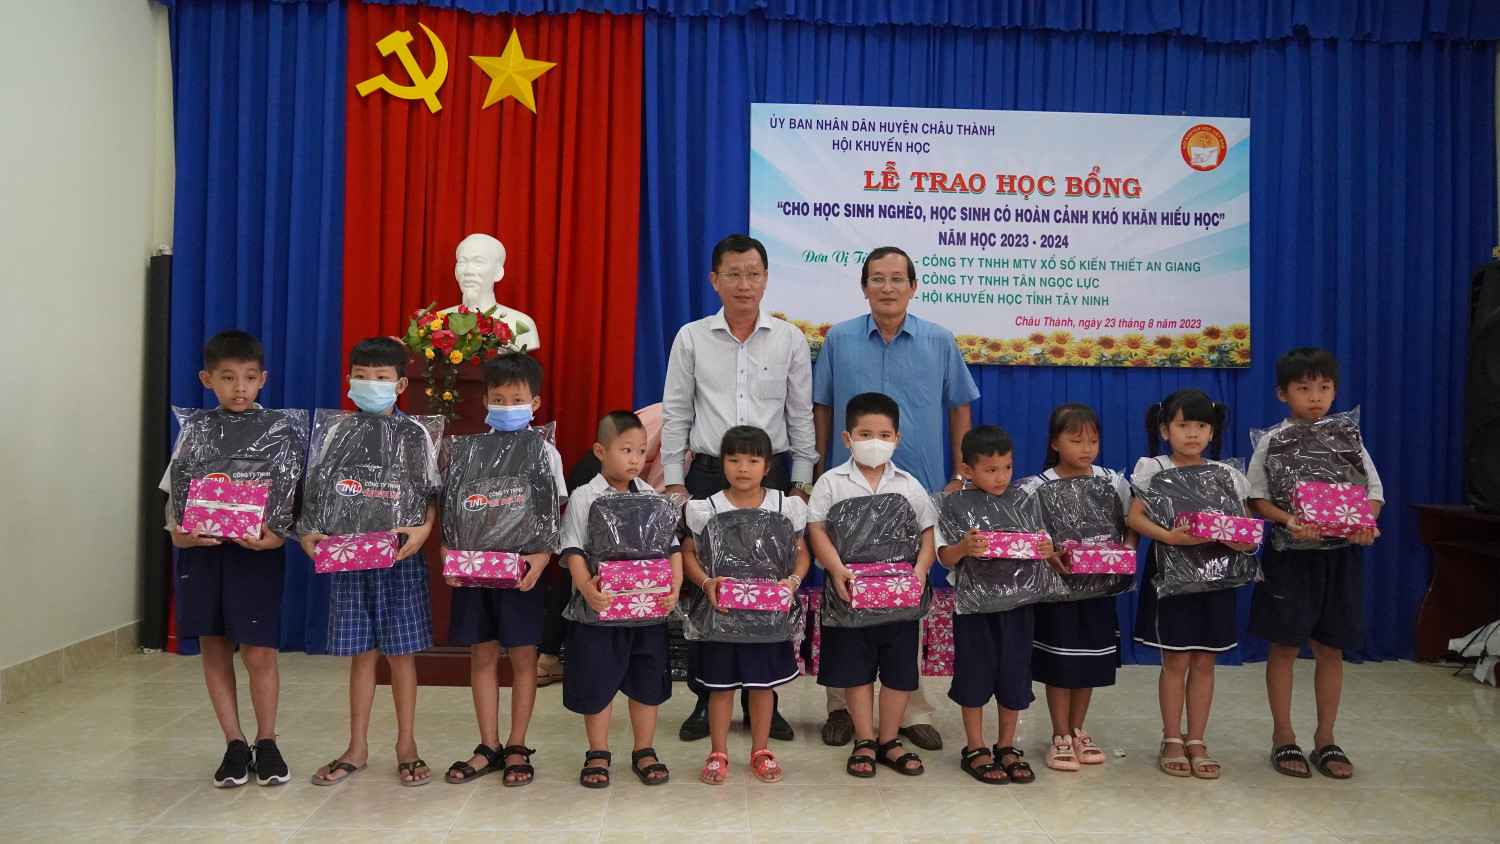 Hội khuyến học tỉnh Tây Ninh: Trao tặng 84 suất học bổng cho học sinh nghèo hiếu học